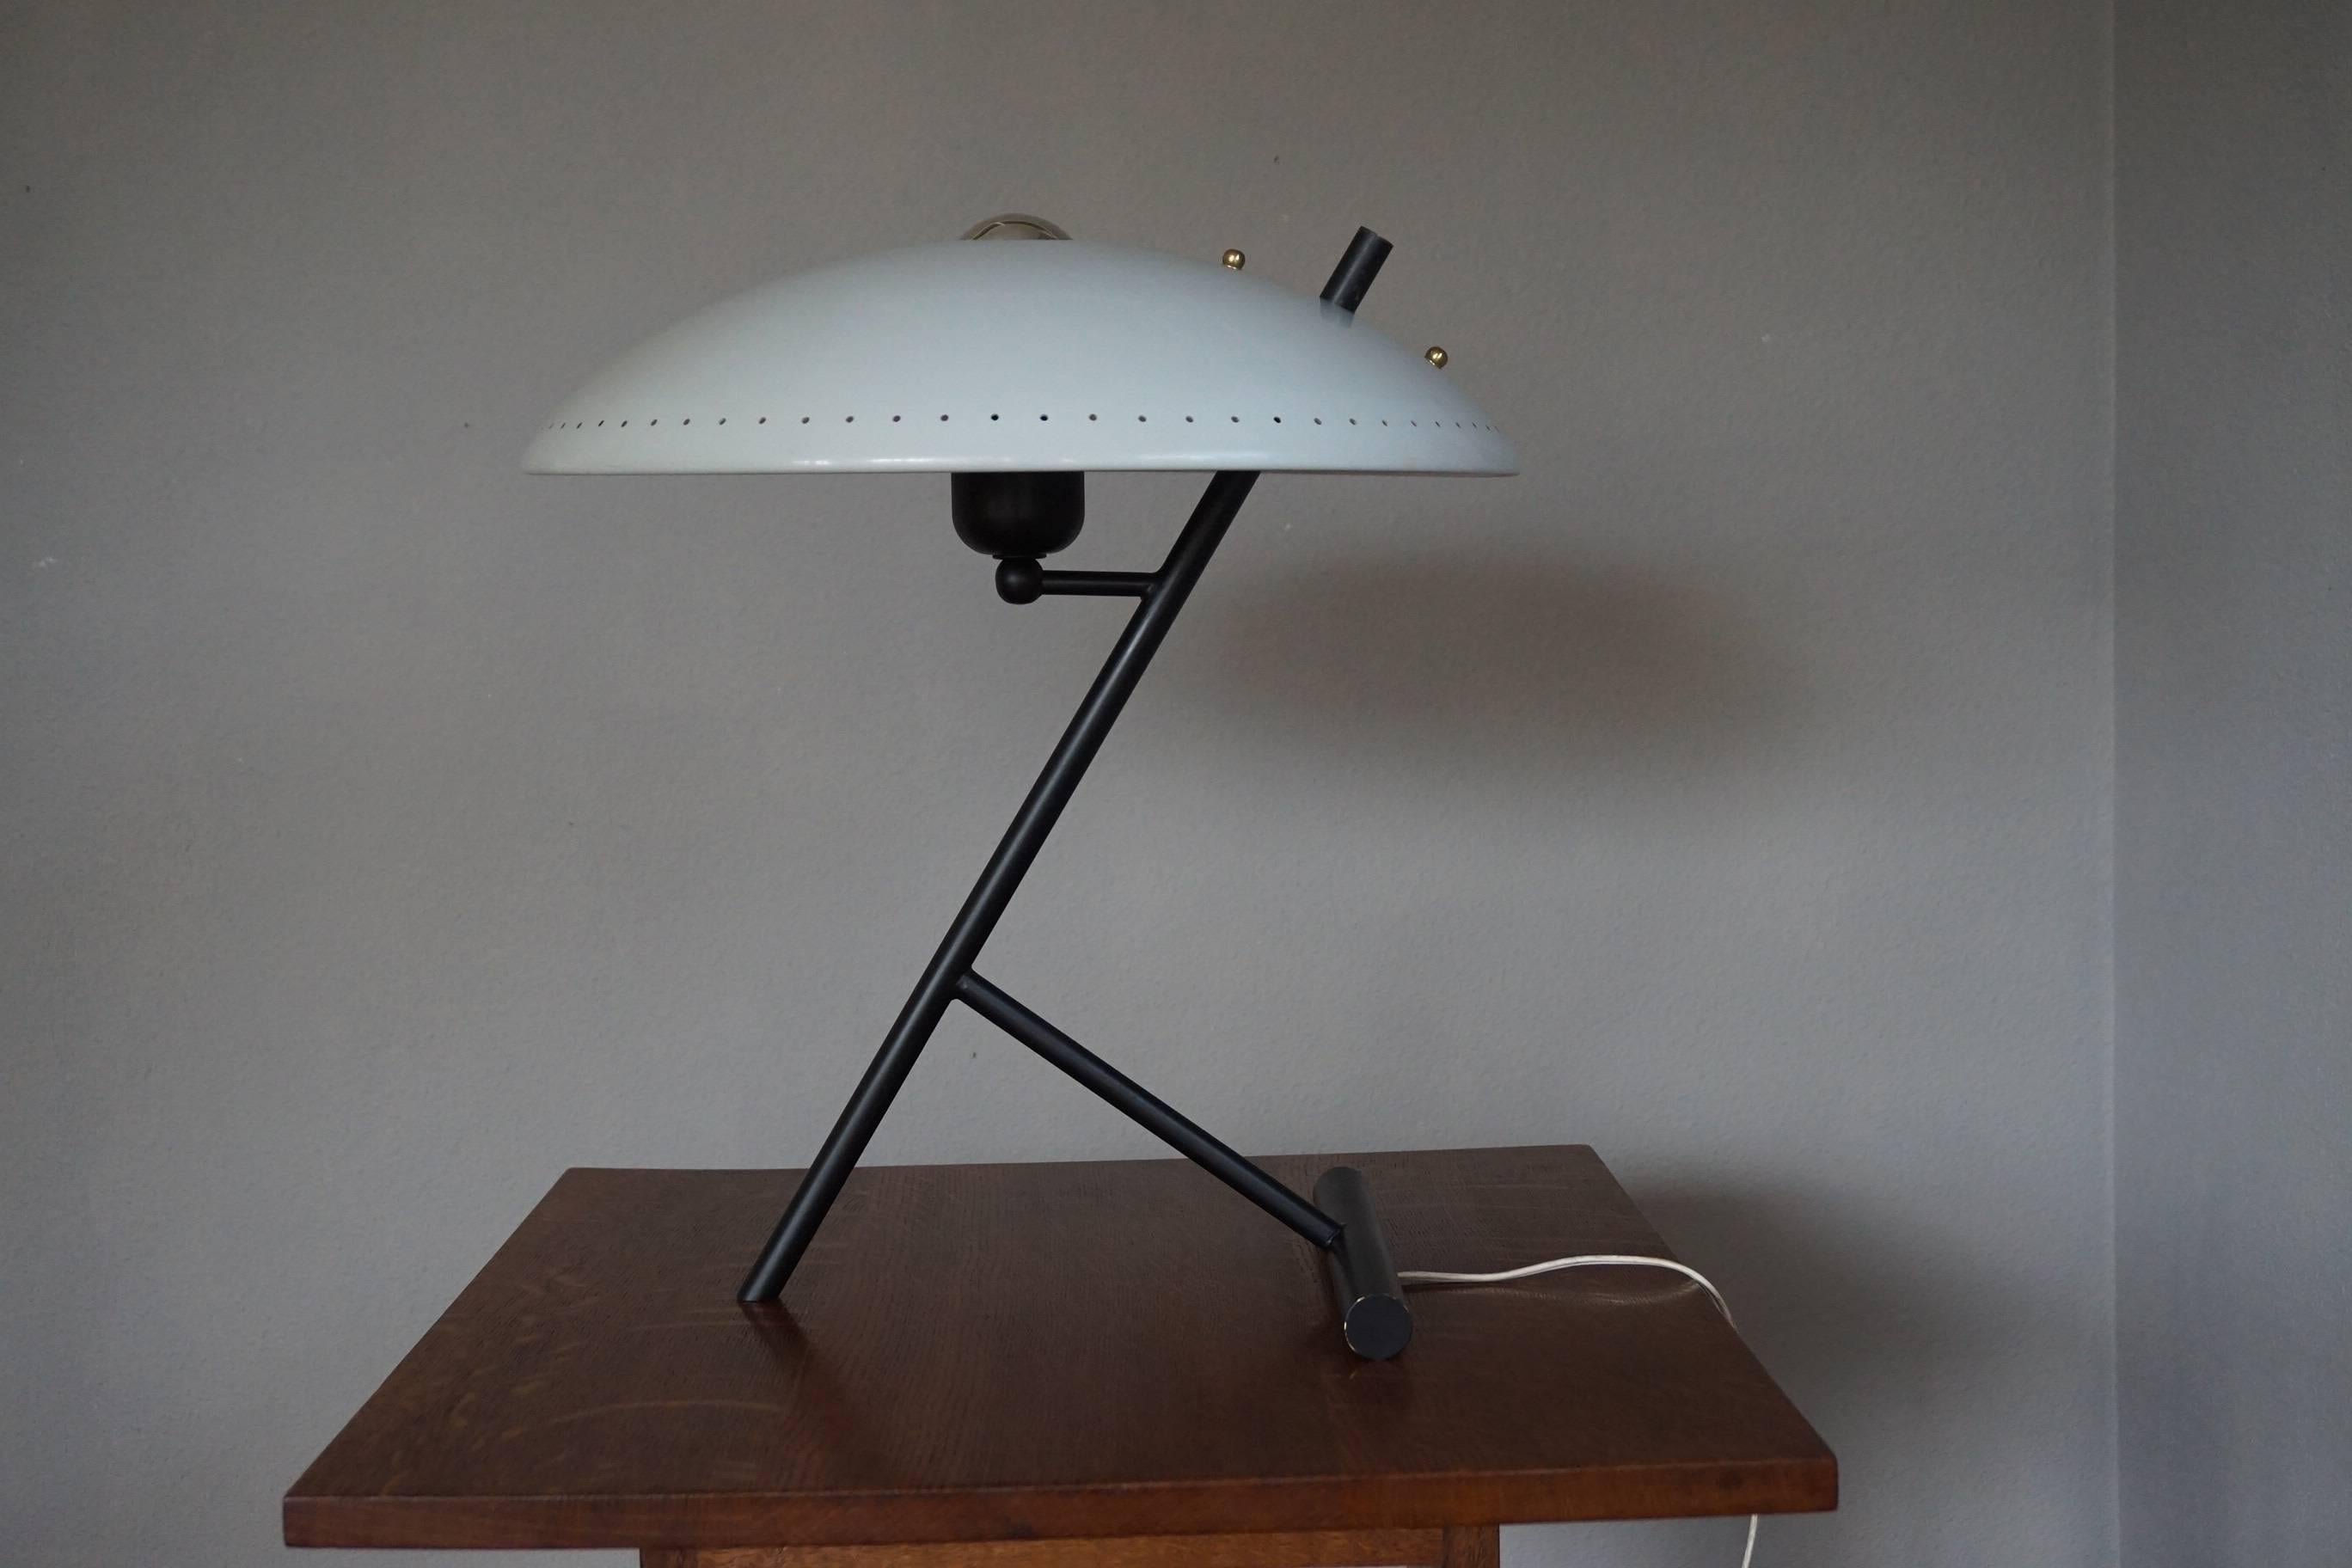 Lampe de table intemporelle et élégante.

Cette magnifique lampe de table du milieu du siècle par Louis Kalff est en très bon état. Cette combinaison de couleurs conviendra à pratiquement tous les intérieurs du milieu du siècle et cette lampe est un